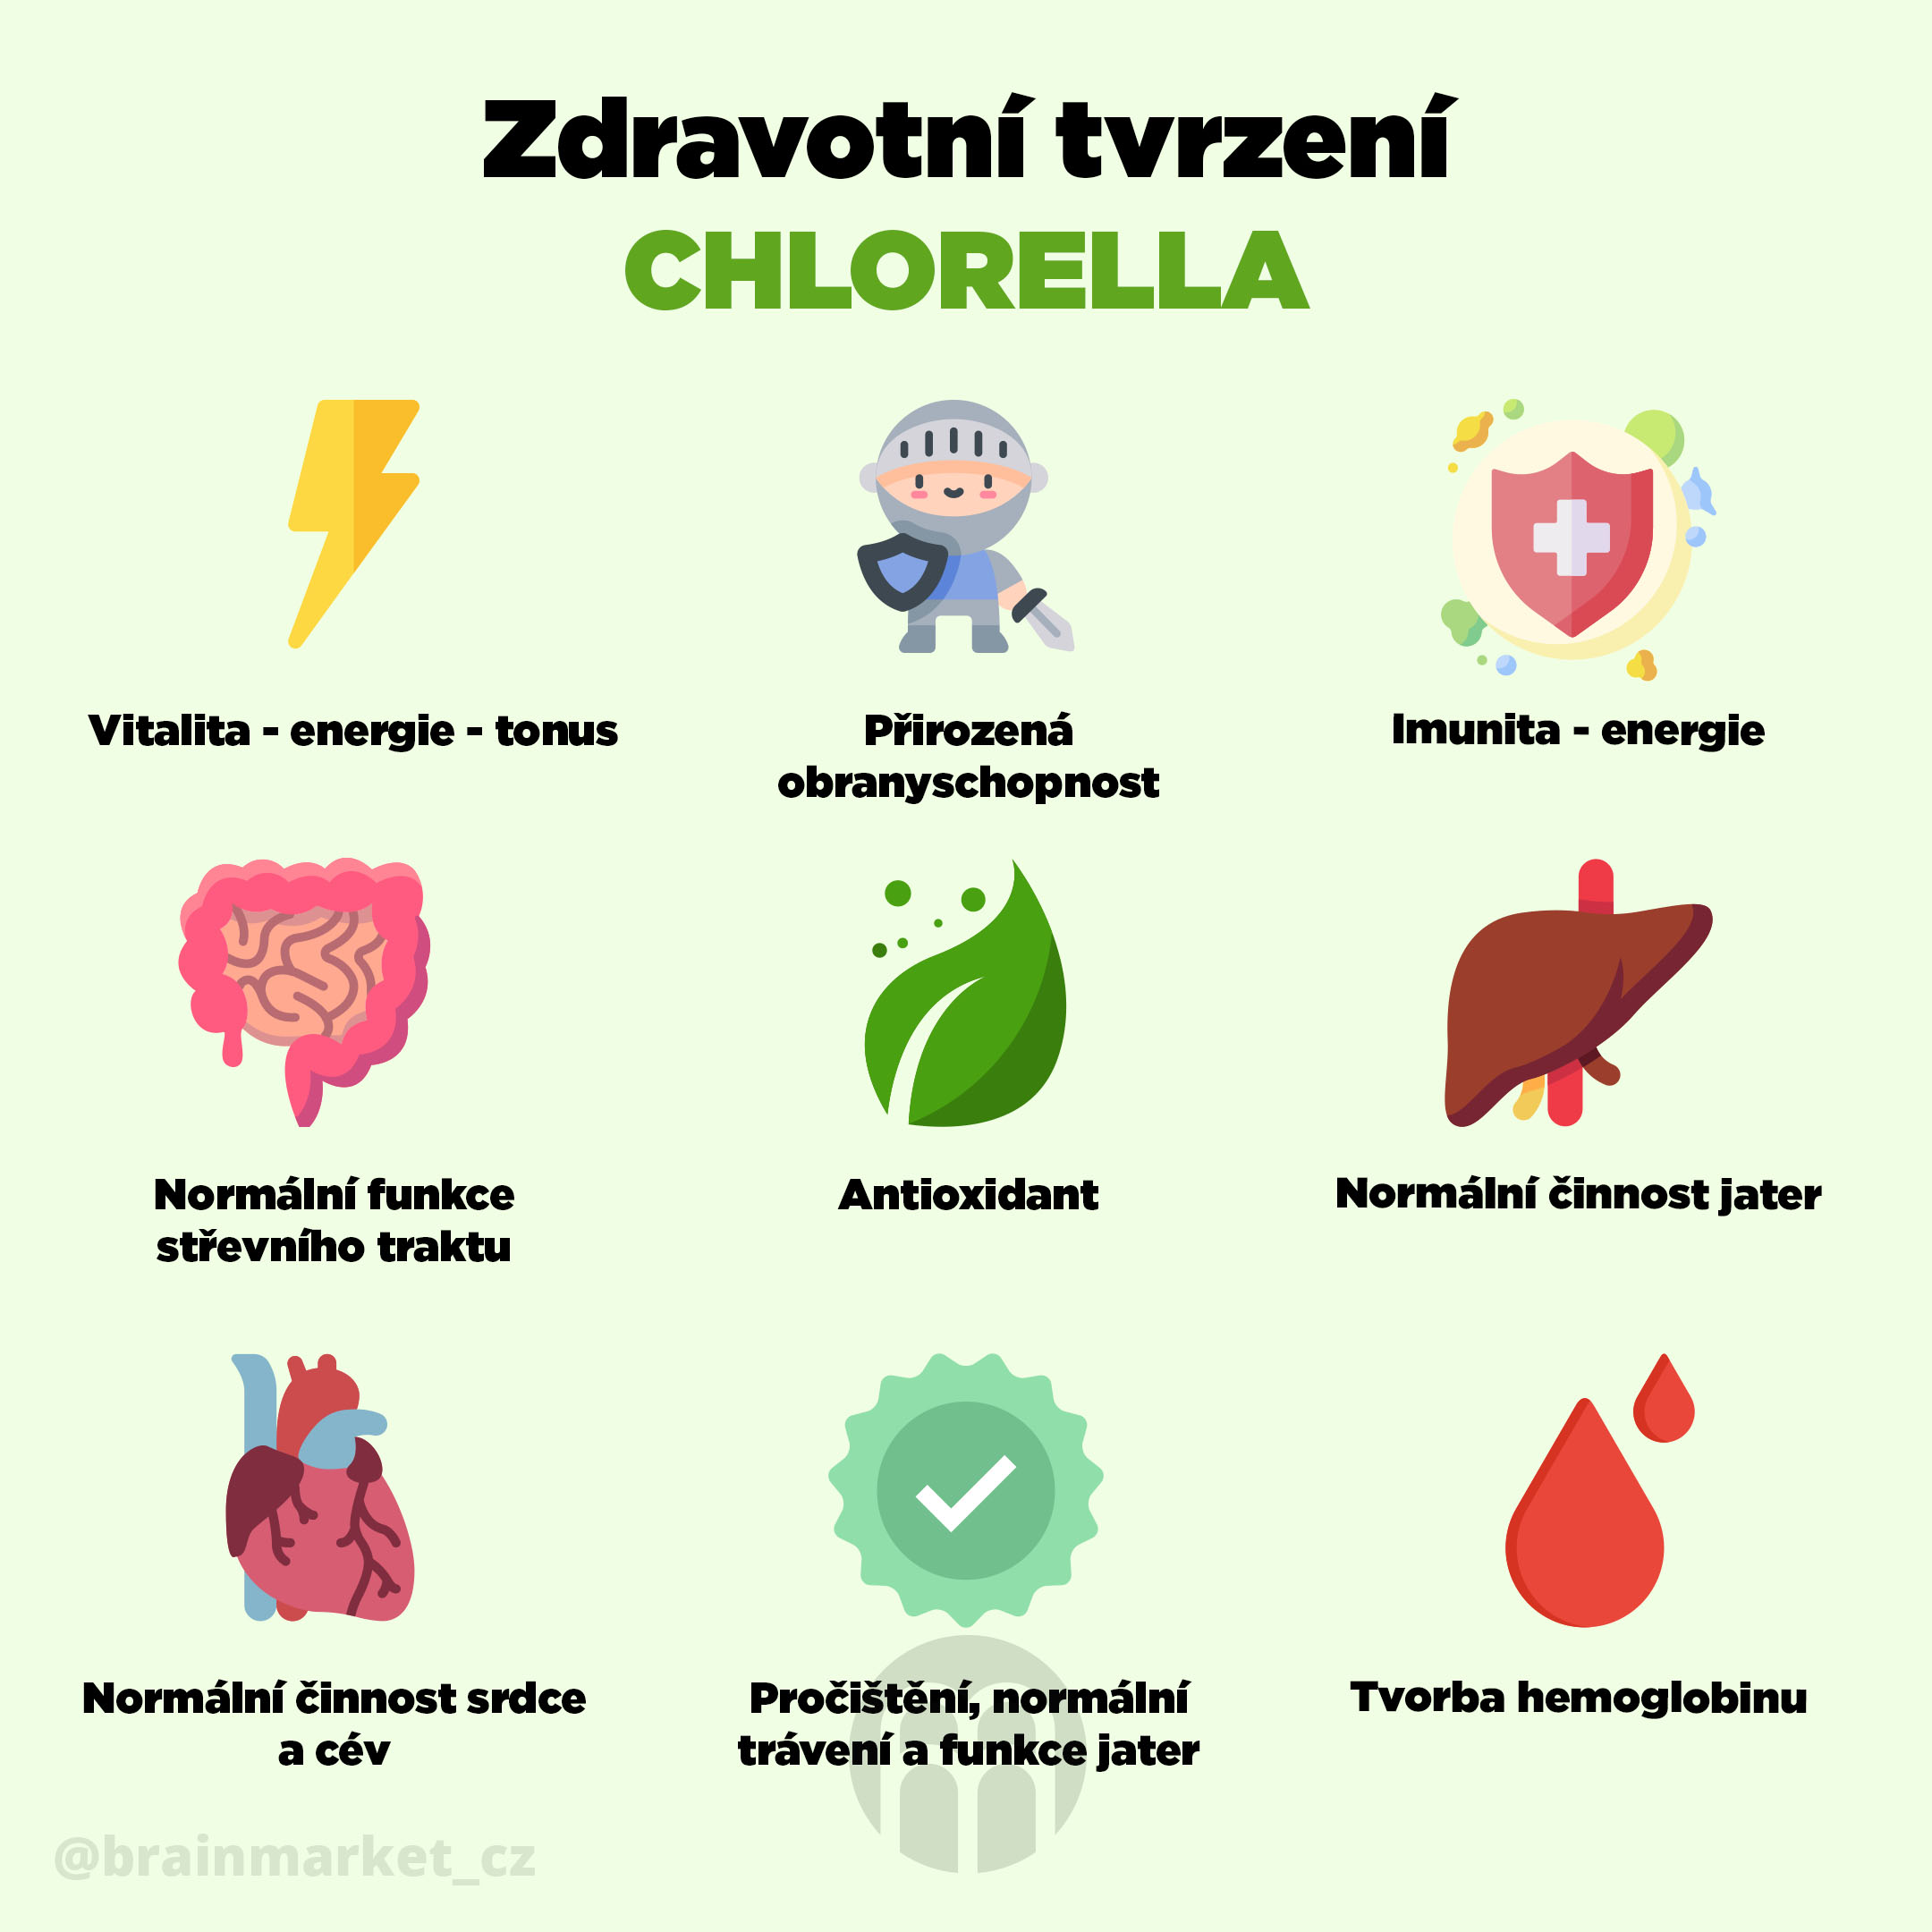 Zdravotní tvrzení Chlorella - BrainMarket.cz